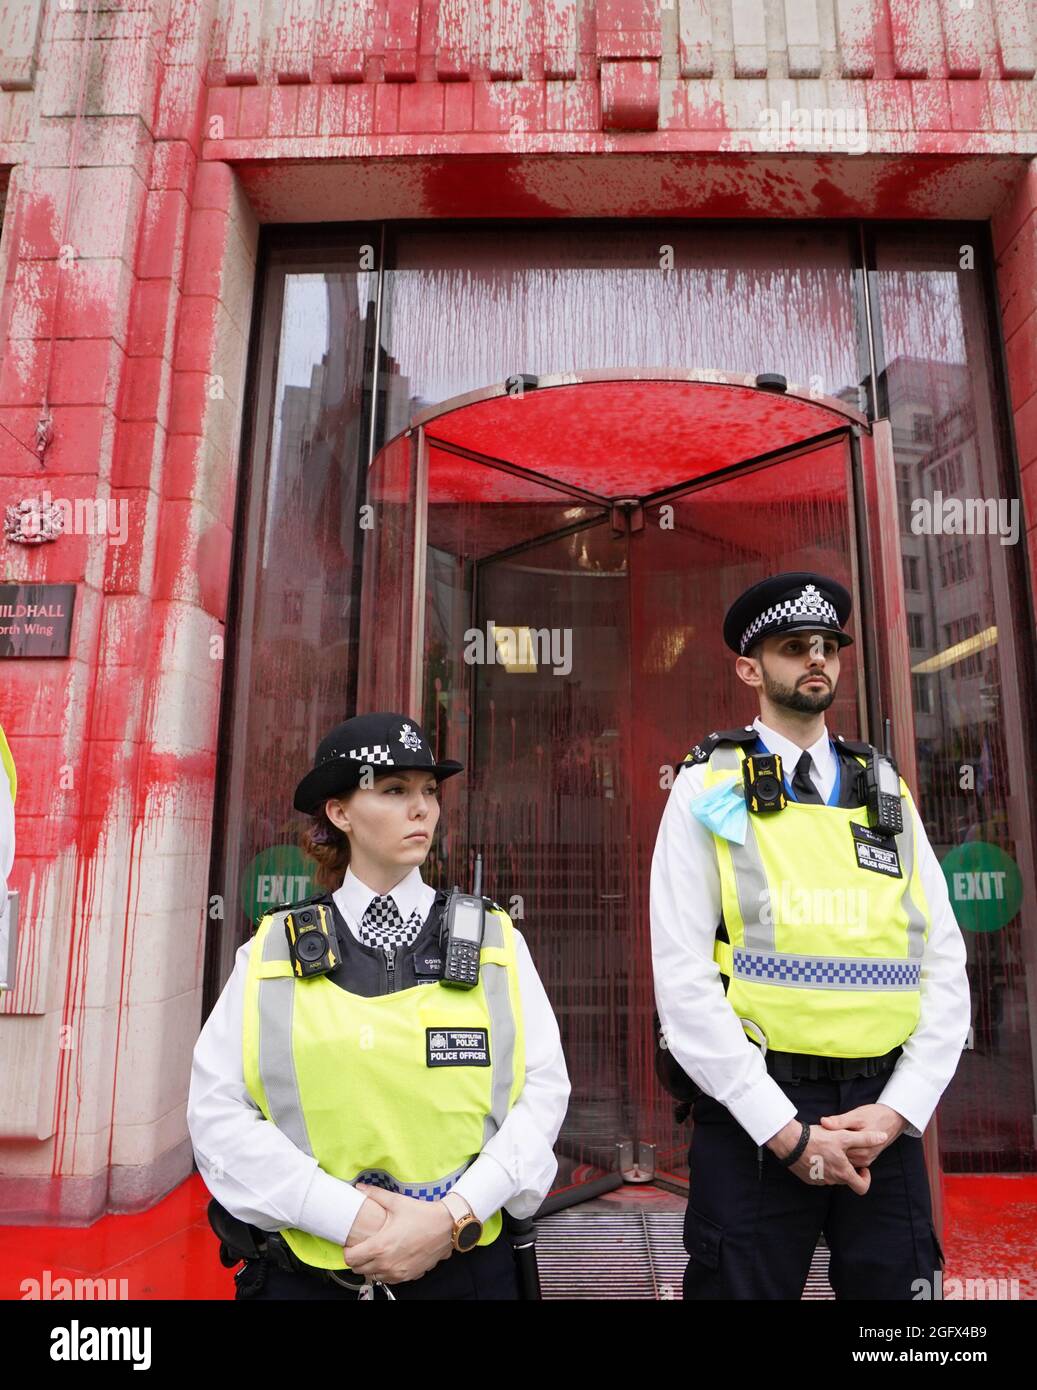 Gli ufficiali di polizia si trovano di fronte a uno degli edifici della Guildhall, che è stato scolorito, mentre una protesta della ribellione dell'estinzione si fa strada attraverso la città di Londra. Data foto: Venerdì 27 agosto 2021. Foto Stock